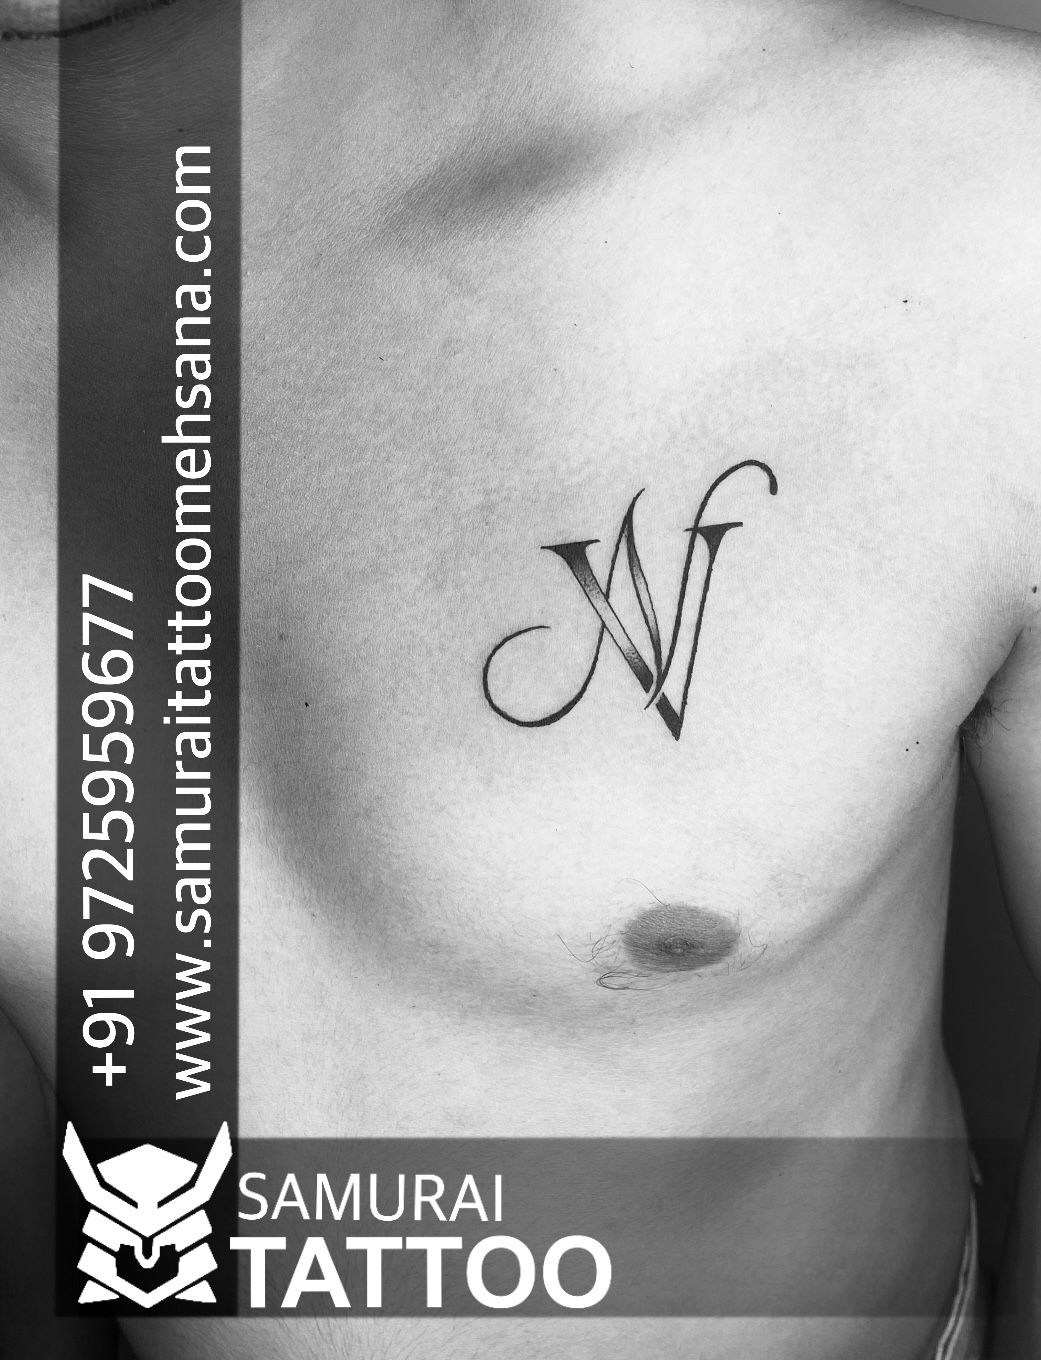 V letter tattoo making || TUTORIAL - YouTube